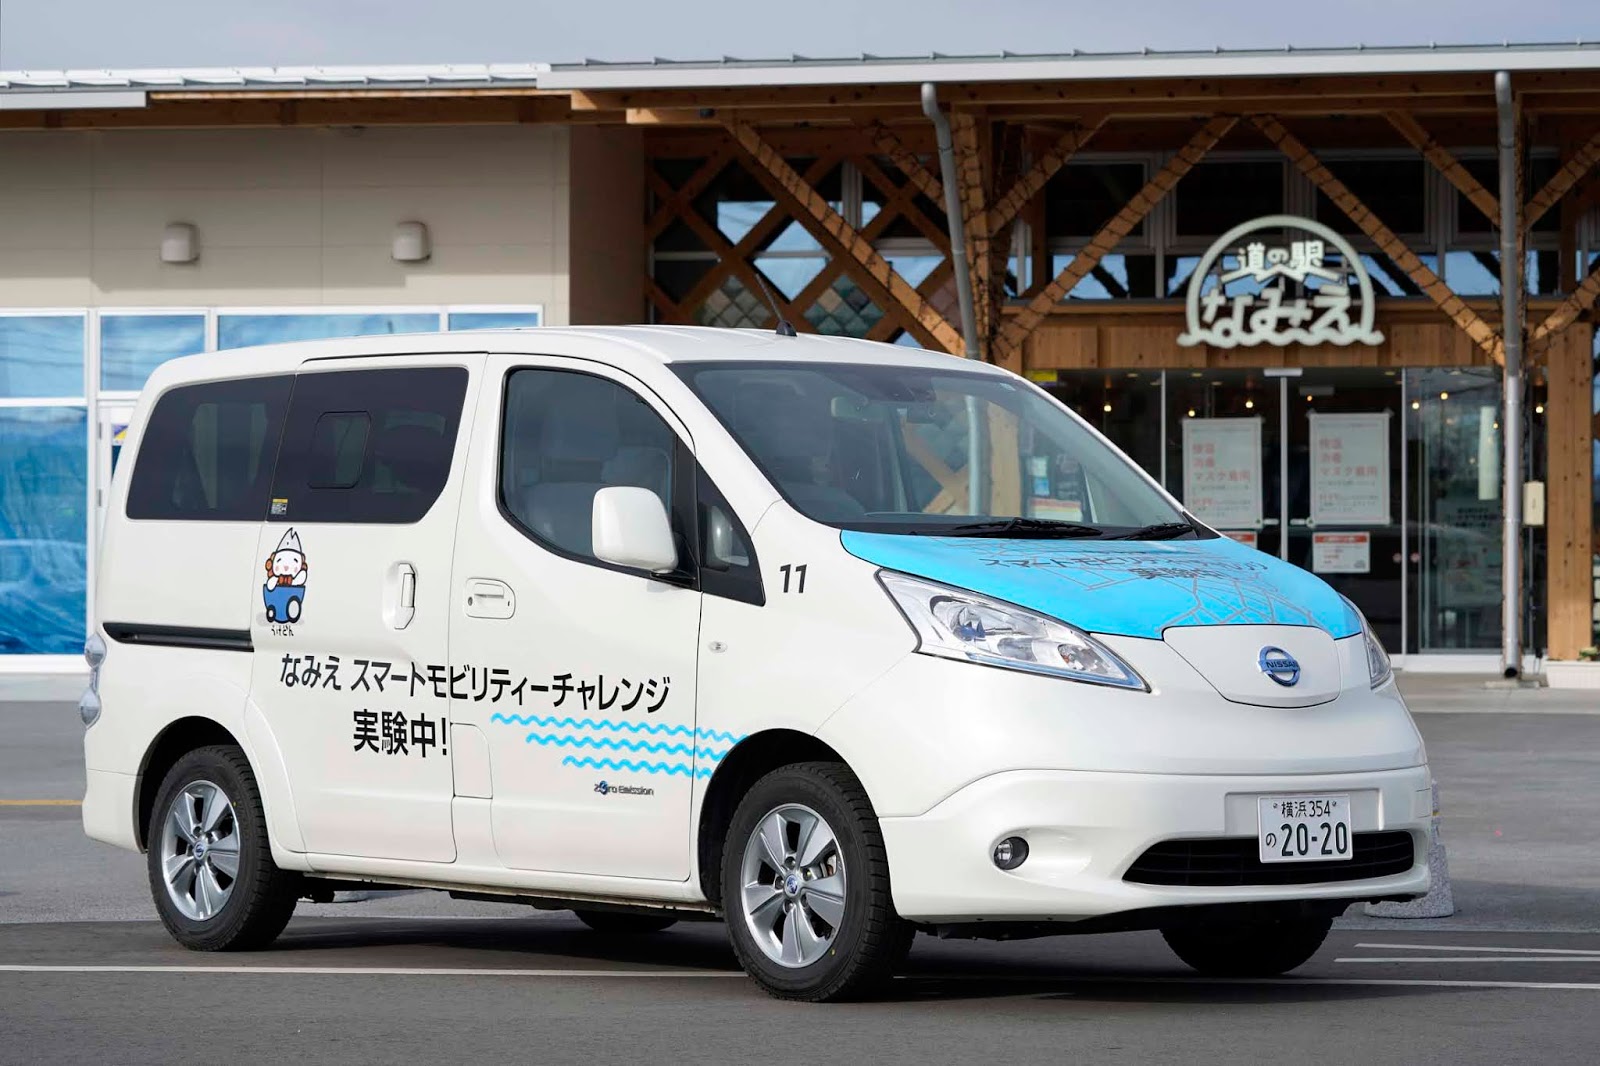 210202 01 j 004 Nissan : Αρχίζει να χτίζει μια βιώσιμη μελλοντική κοινότητα στην Ιαπωνία